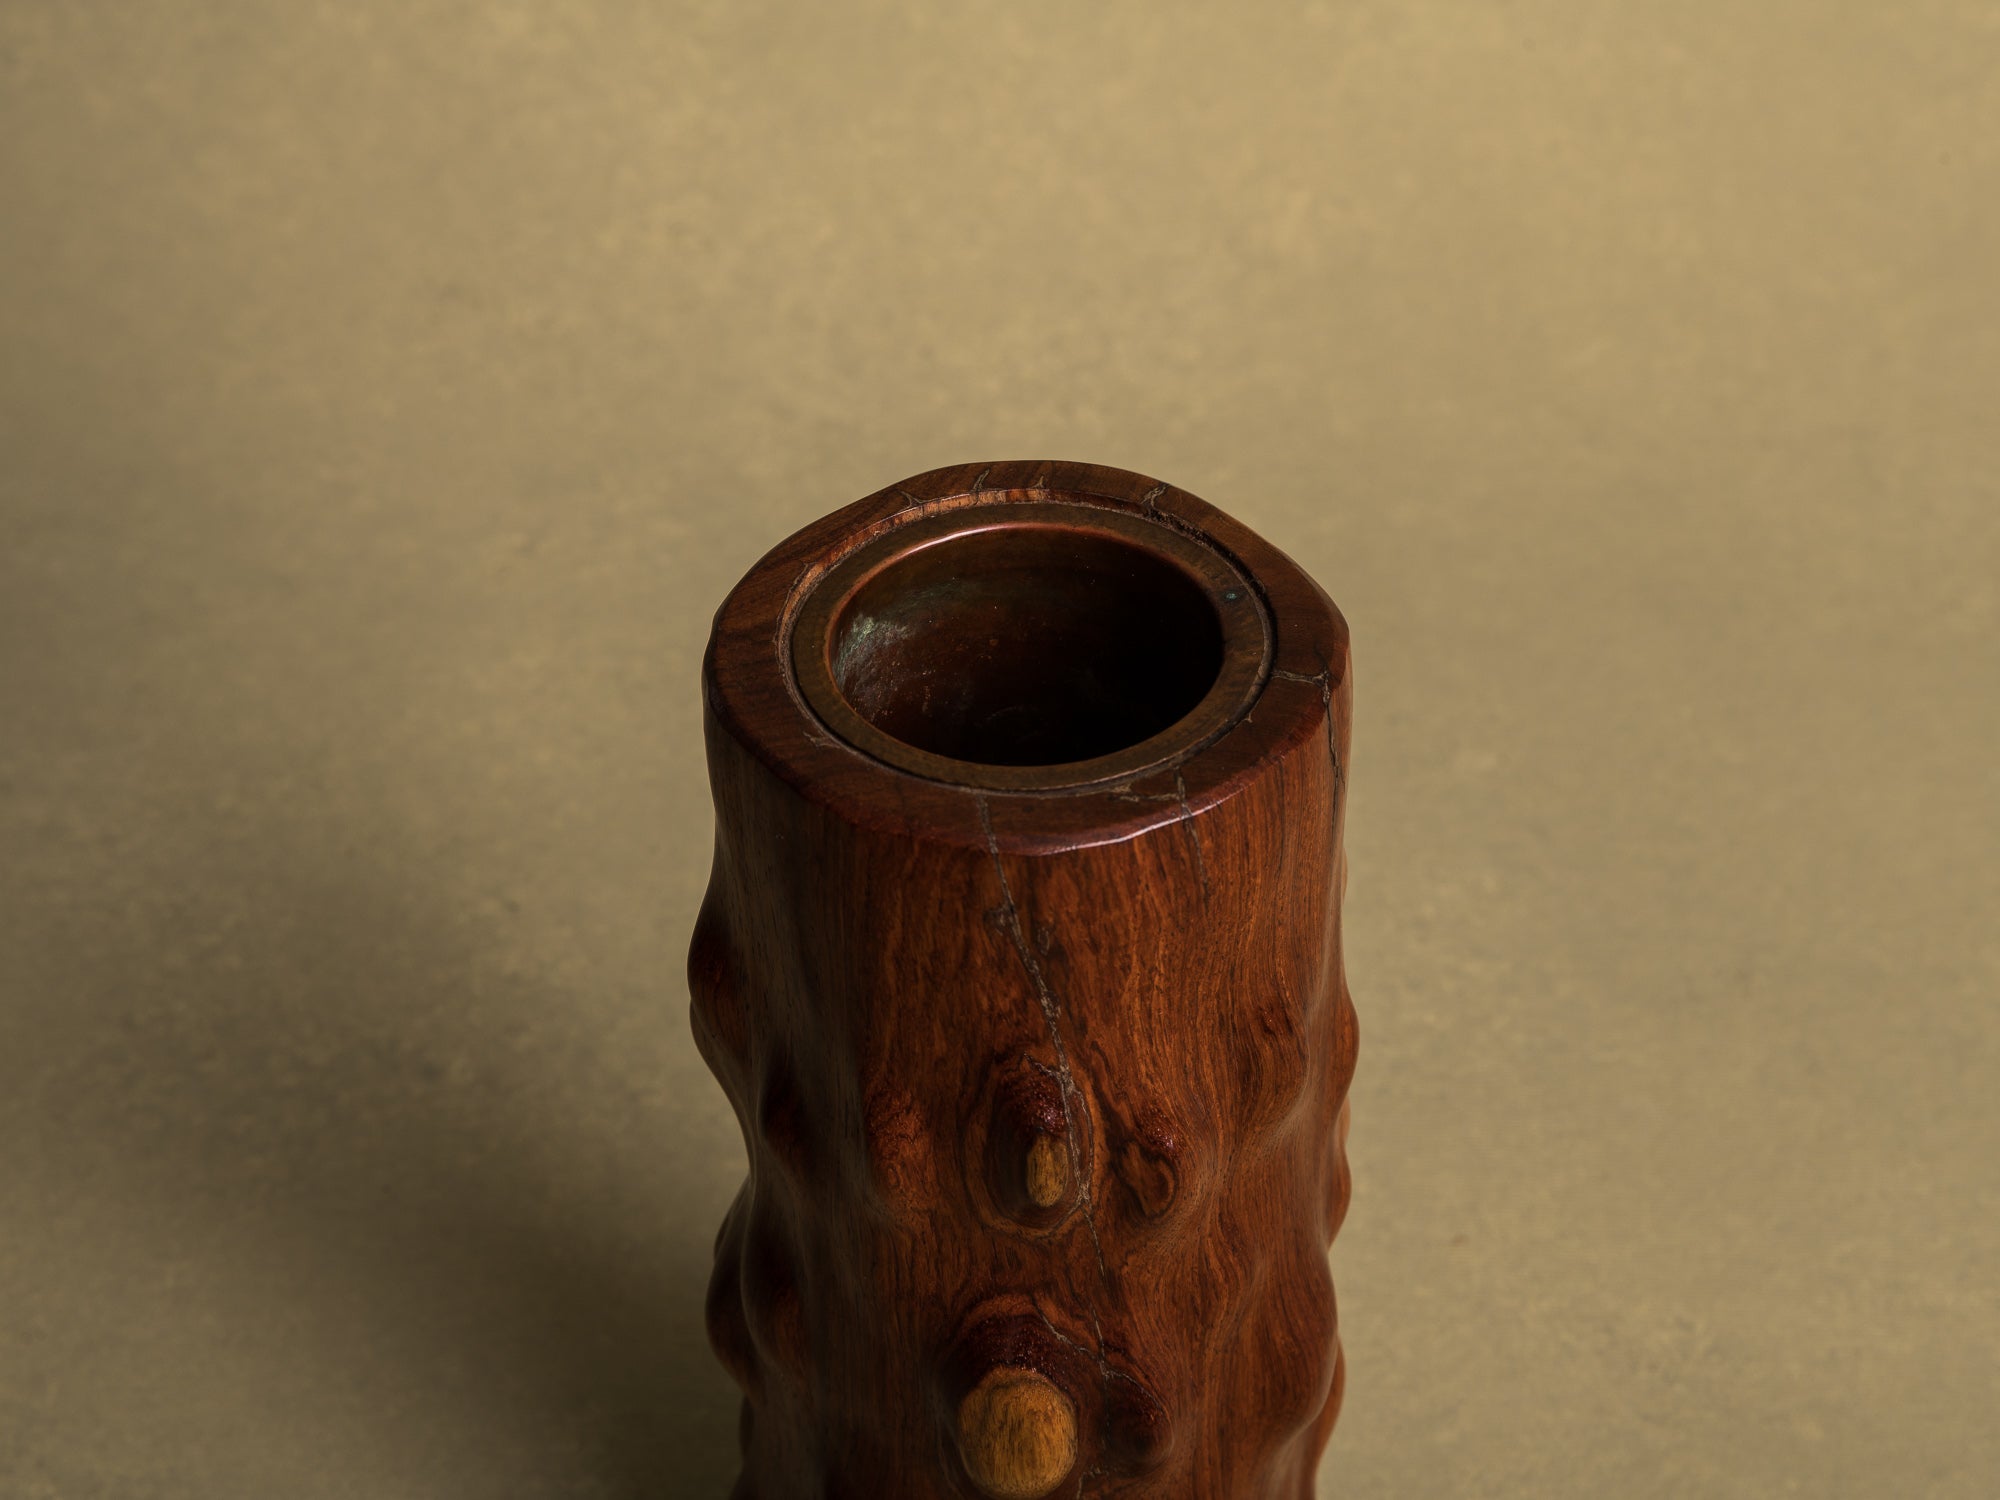 Vase pour l'ikebana en bois pour la cérémonie du thé, Japon (Ère Shōwa)..Wooden flower vase for ikebana and tea ceremony, Japan (Shōwa era)